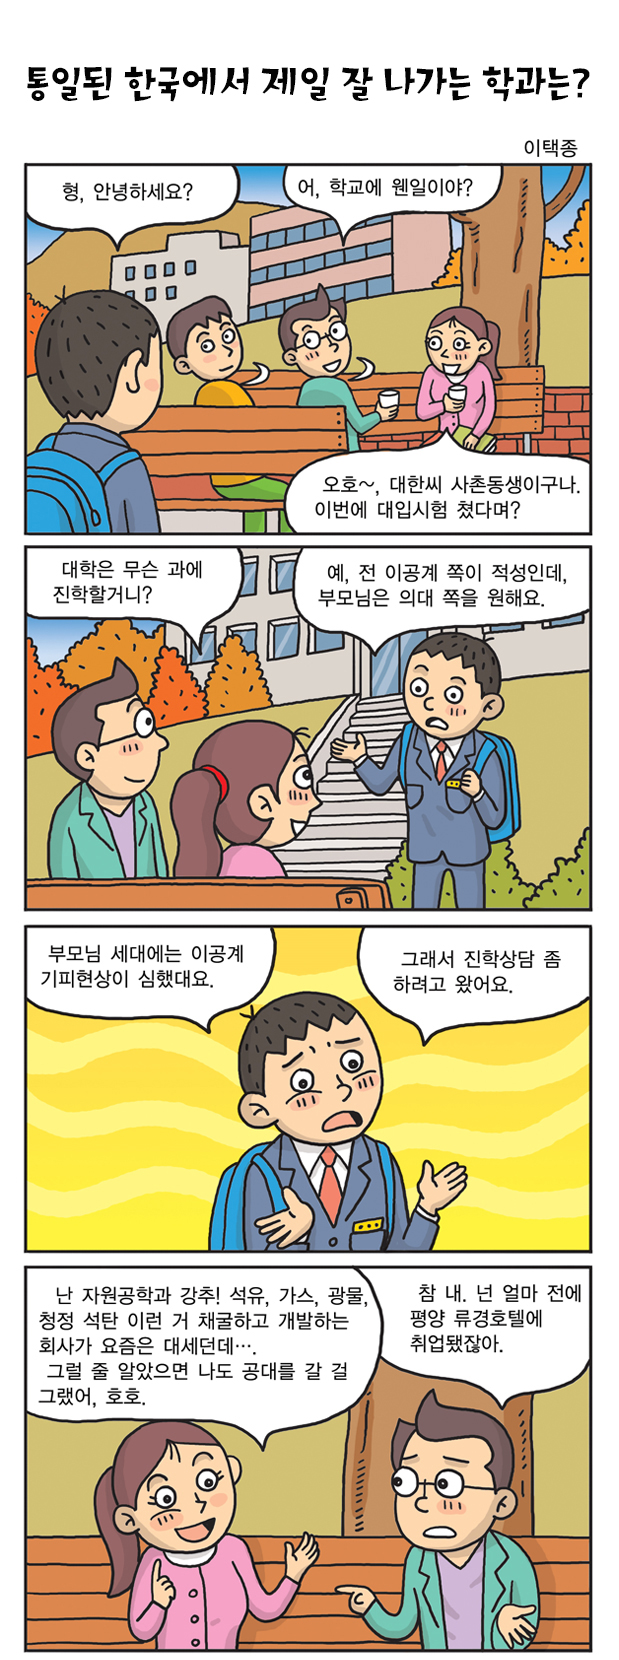 통일된 한국에서 제일 잘 나가는 학과는?